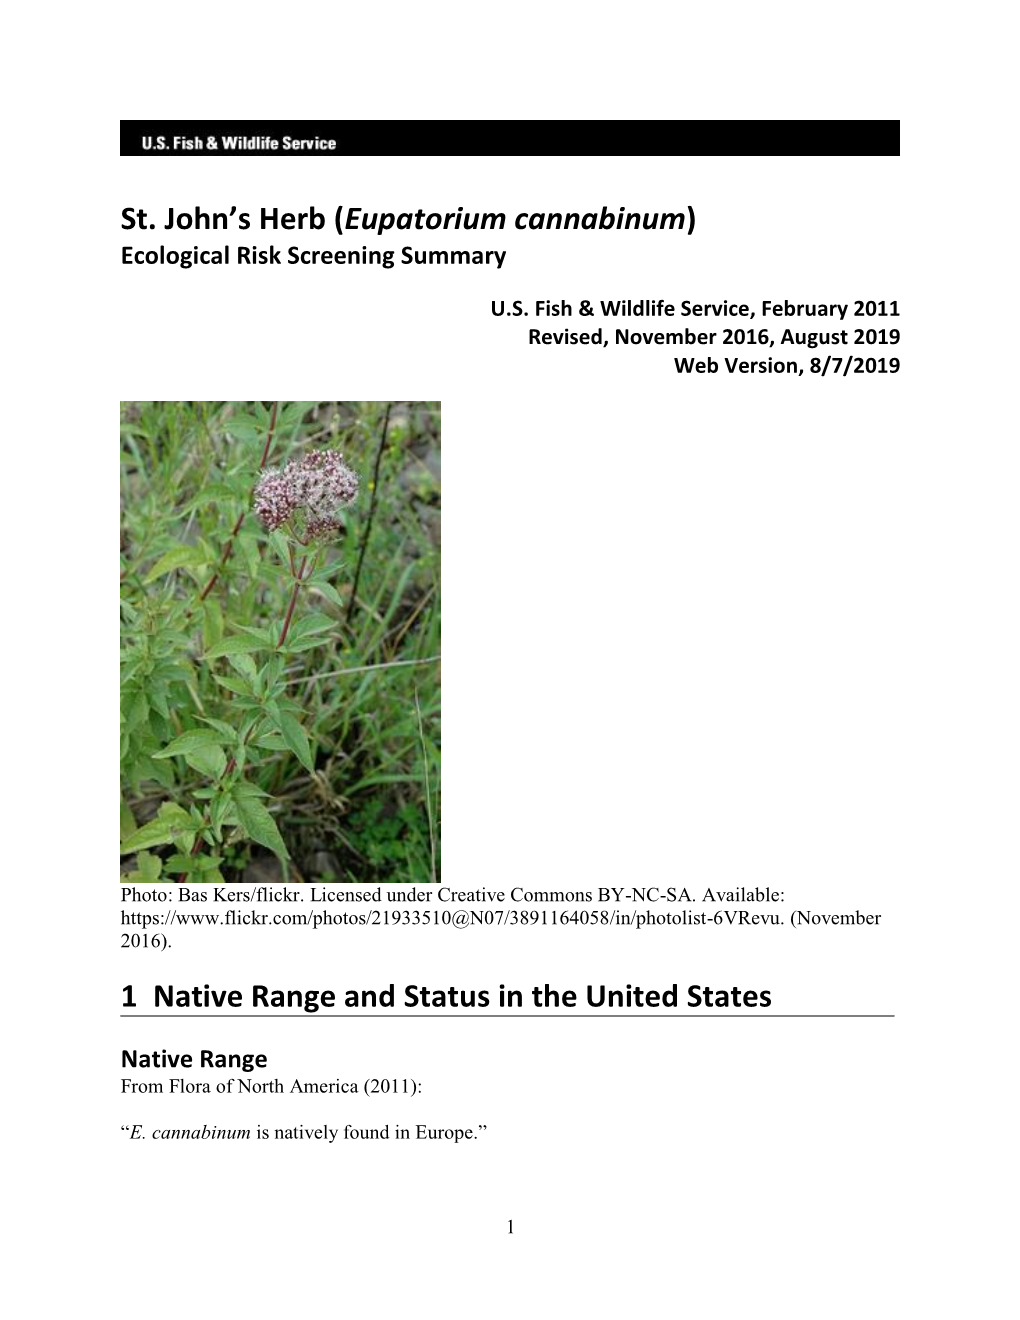 St. John's Herb (Eupatorium Cannabinum) ERSS